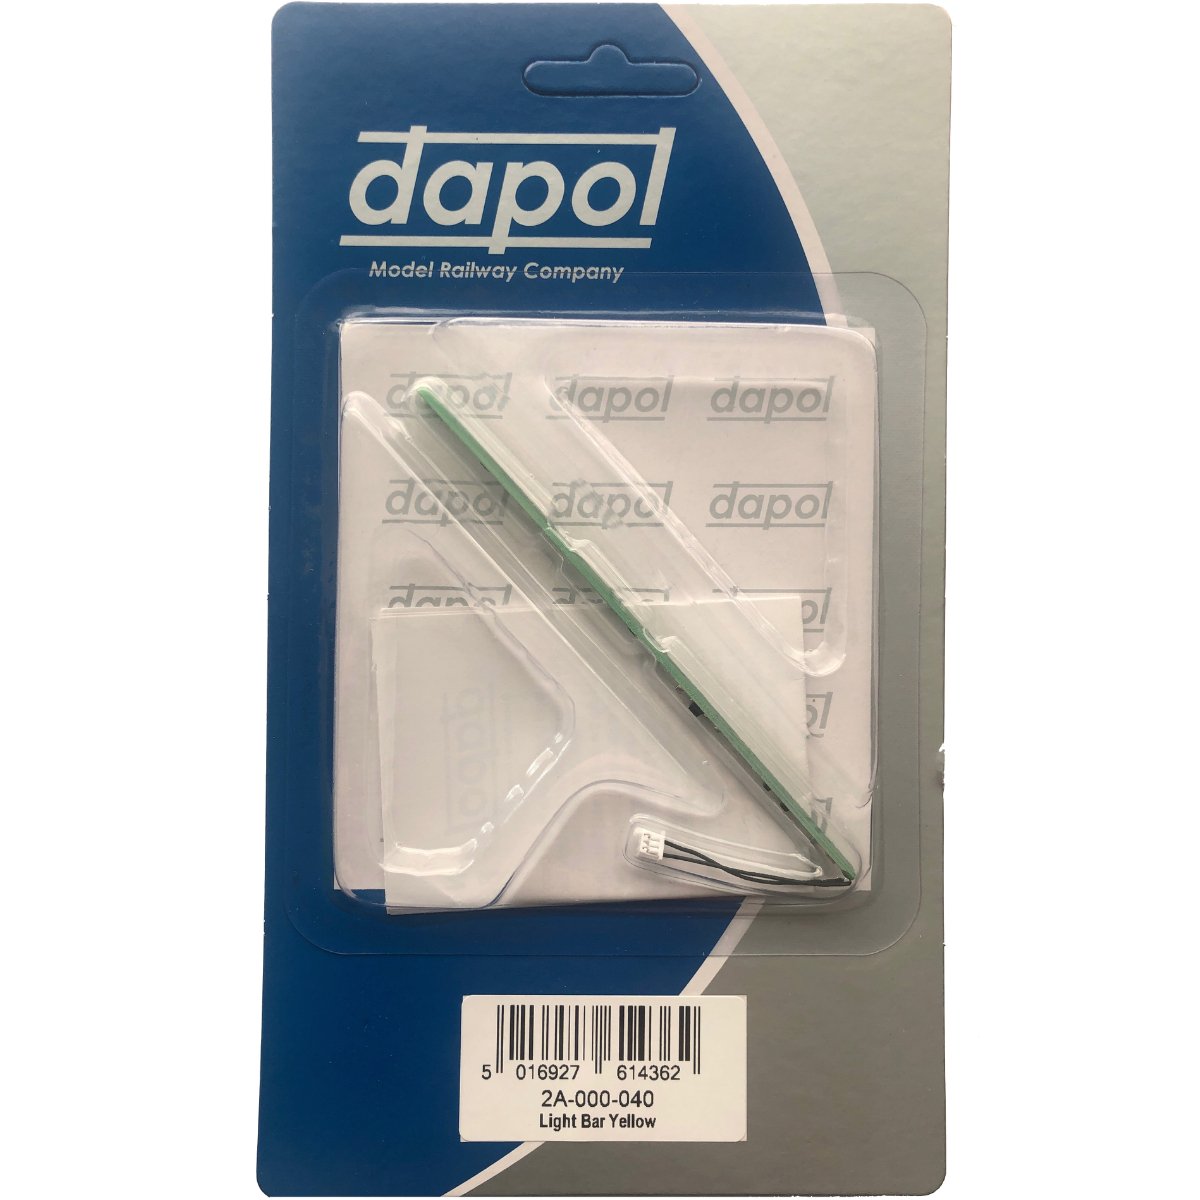 Dapol 2A-000-040 N Gauge Light Bar Yellow (Steam)